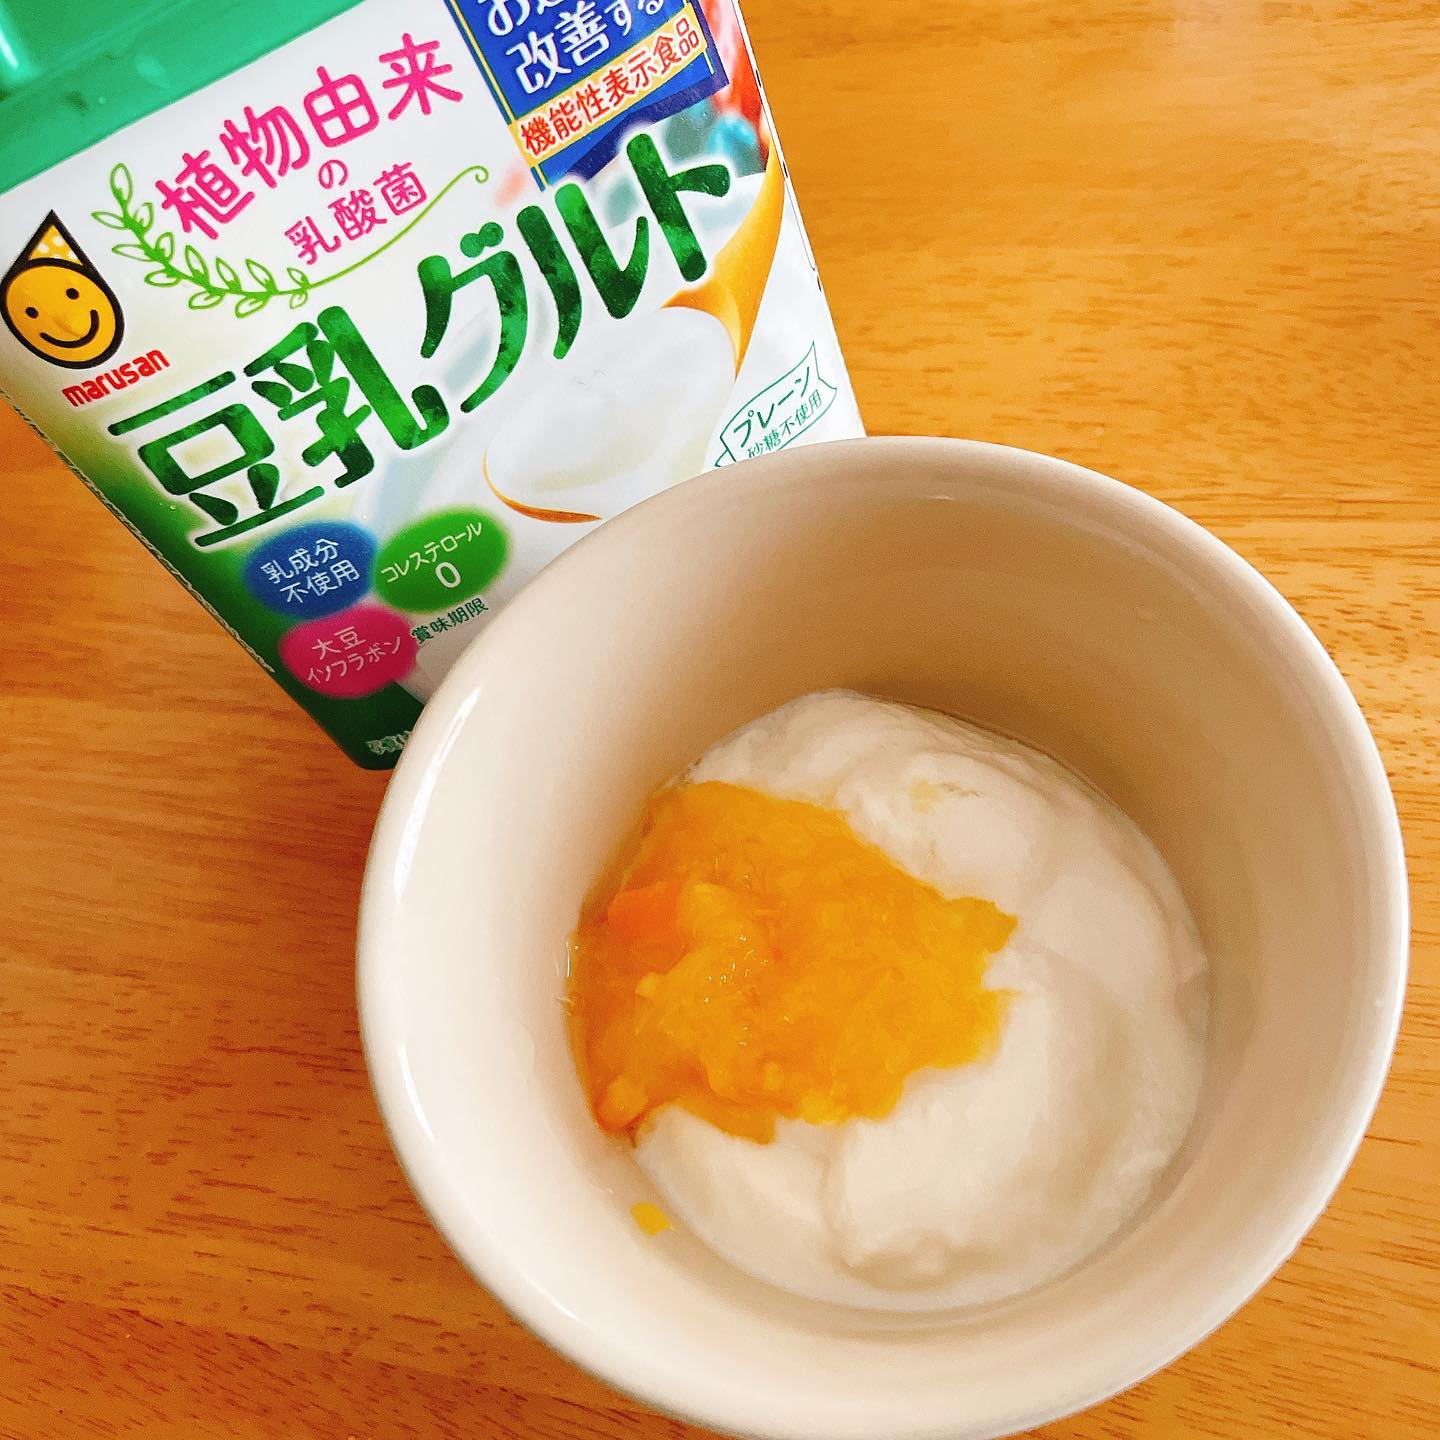 口コミ投稿：@marusanai_official 様より。#豆乳グルト お試しさせて頂きました！まずはそのまま…